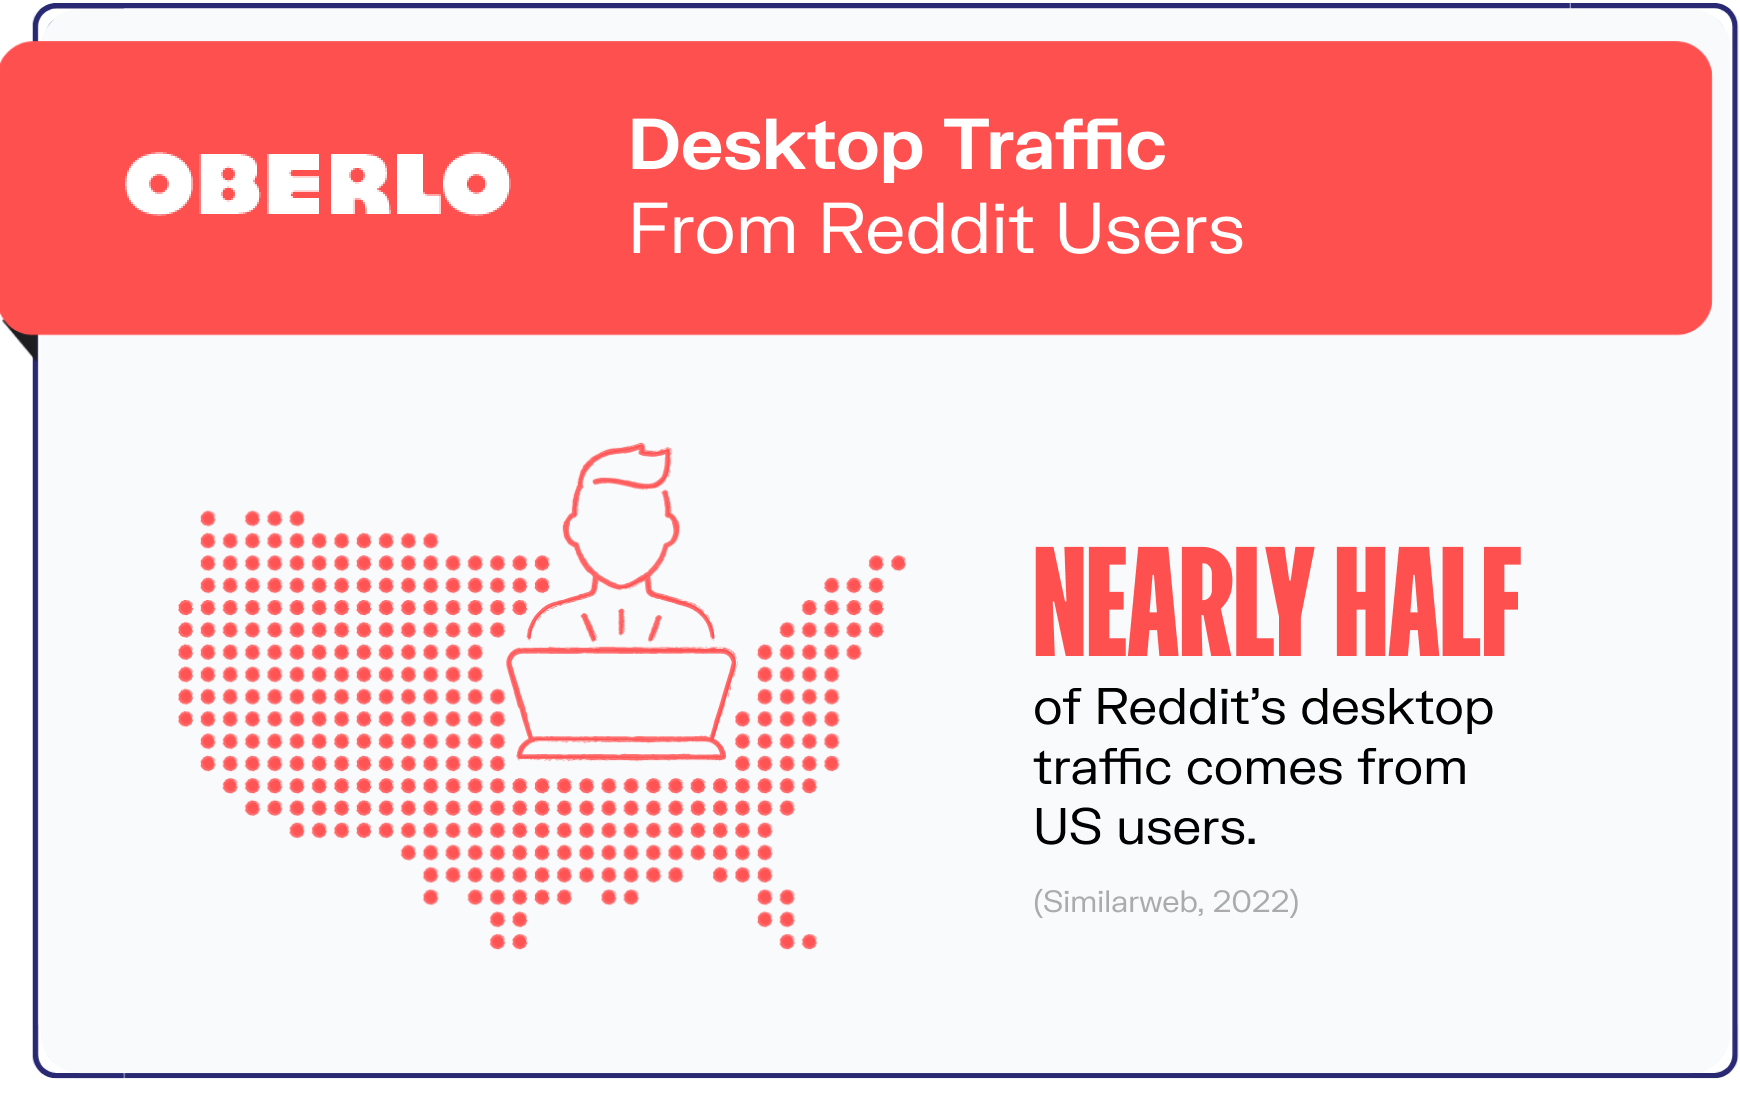 reddit statistics graphic3